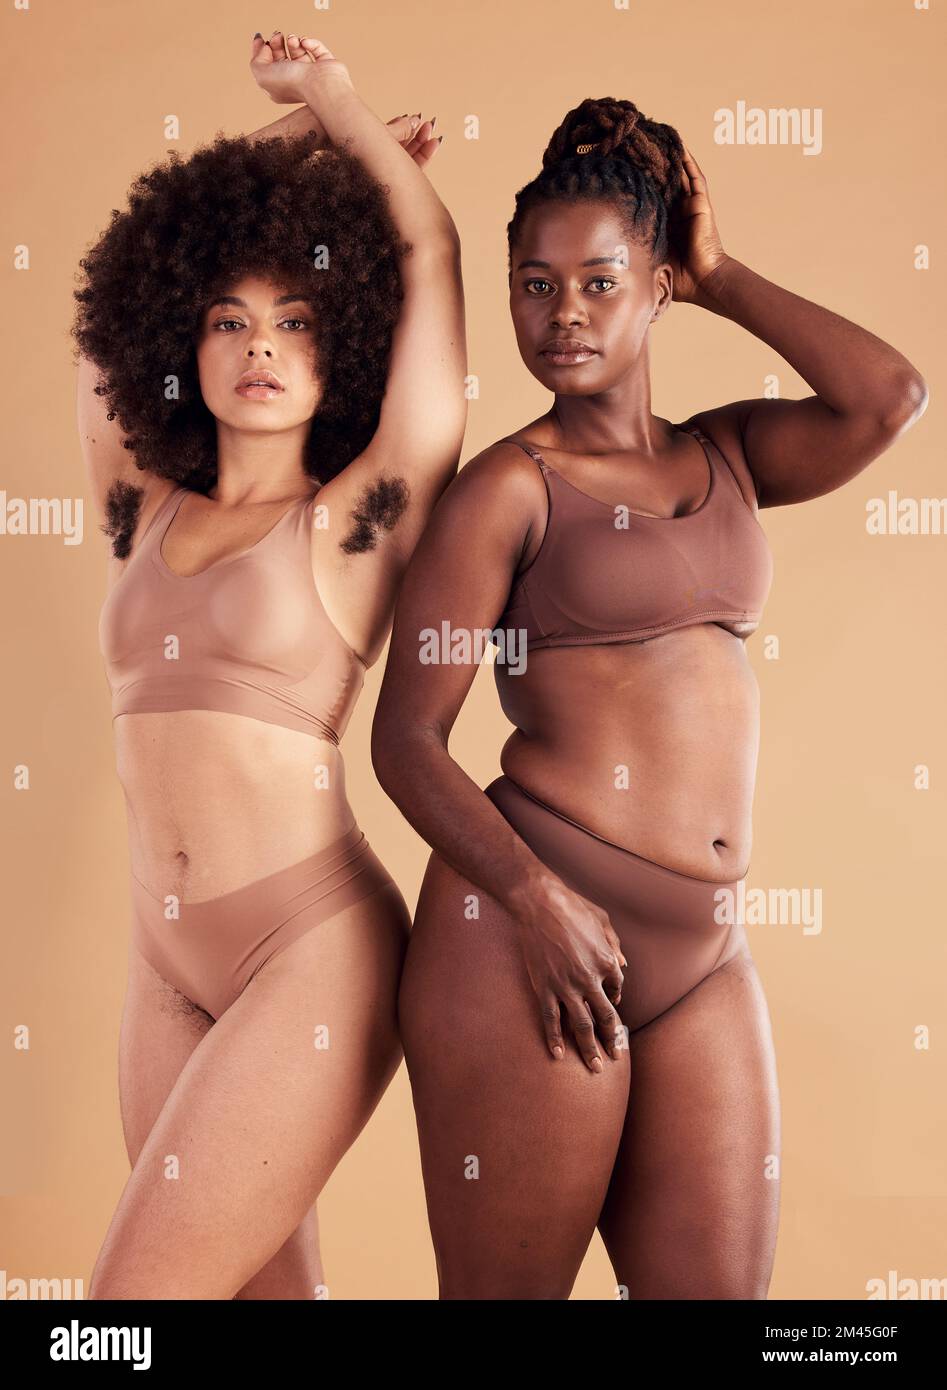 Körperpositive, befähigende und schwarze Frauen mit Körperbehaarung für natürliche Schönheit, Pflege der Haut und Selbstvertrauen auf braunem Studiohintergrund. Ich liebe mich selbst. Stockfoto